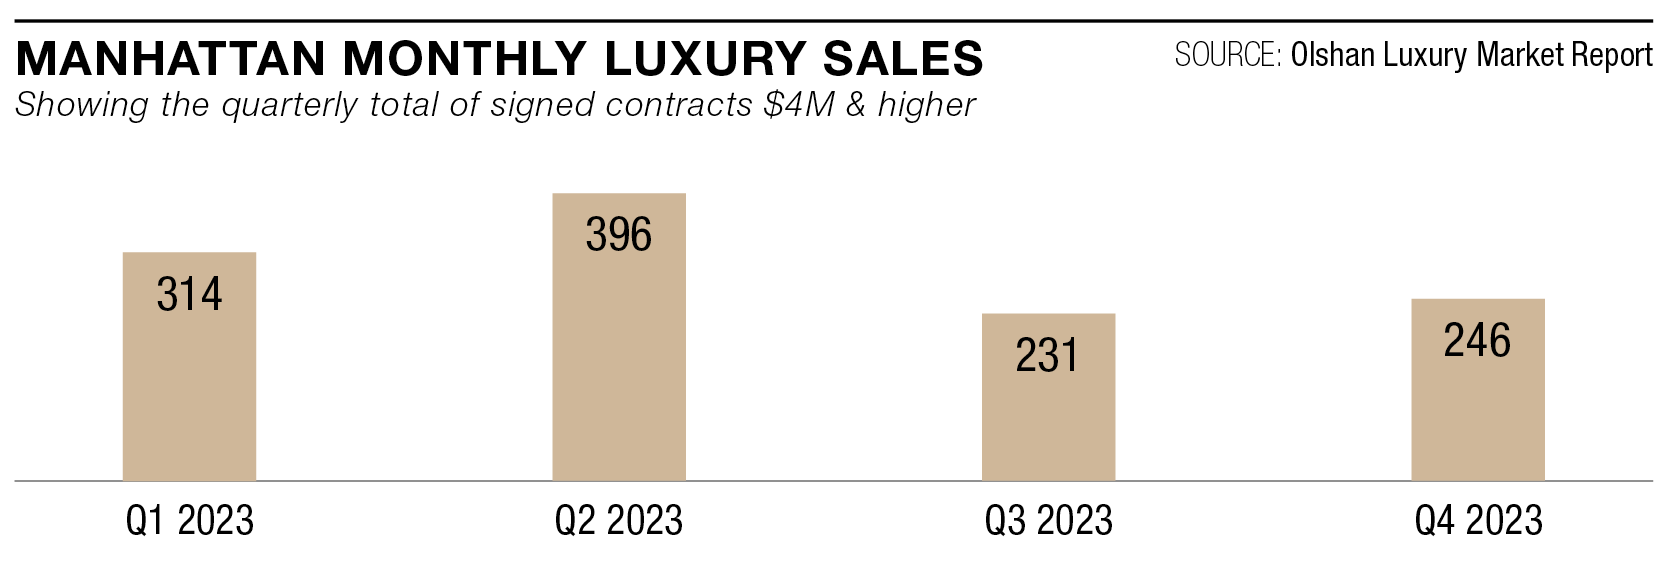 Manhattan Monthly Luxury Sales